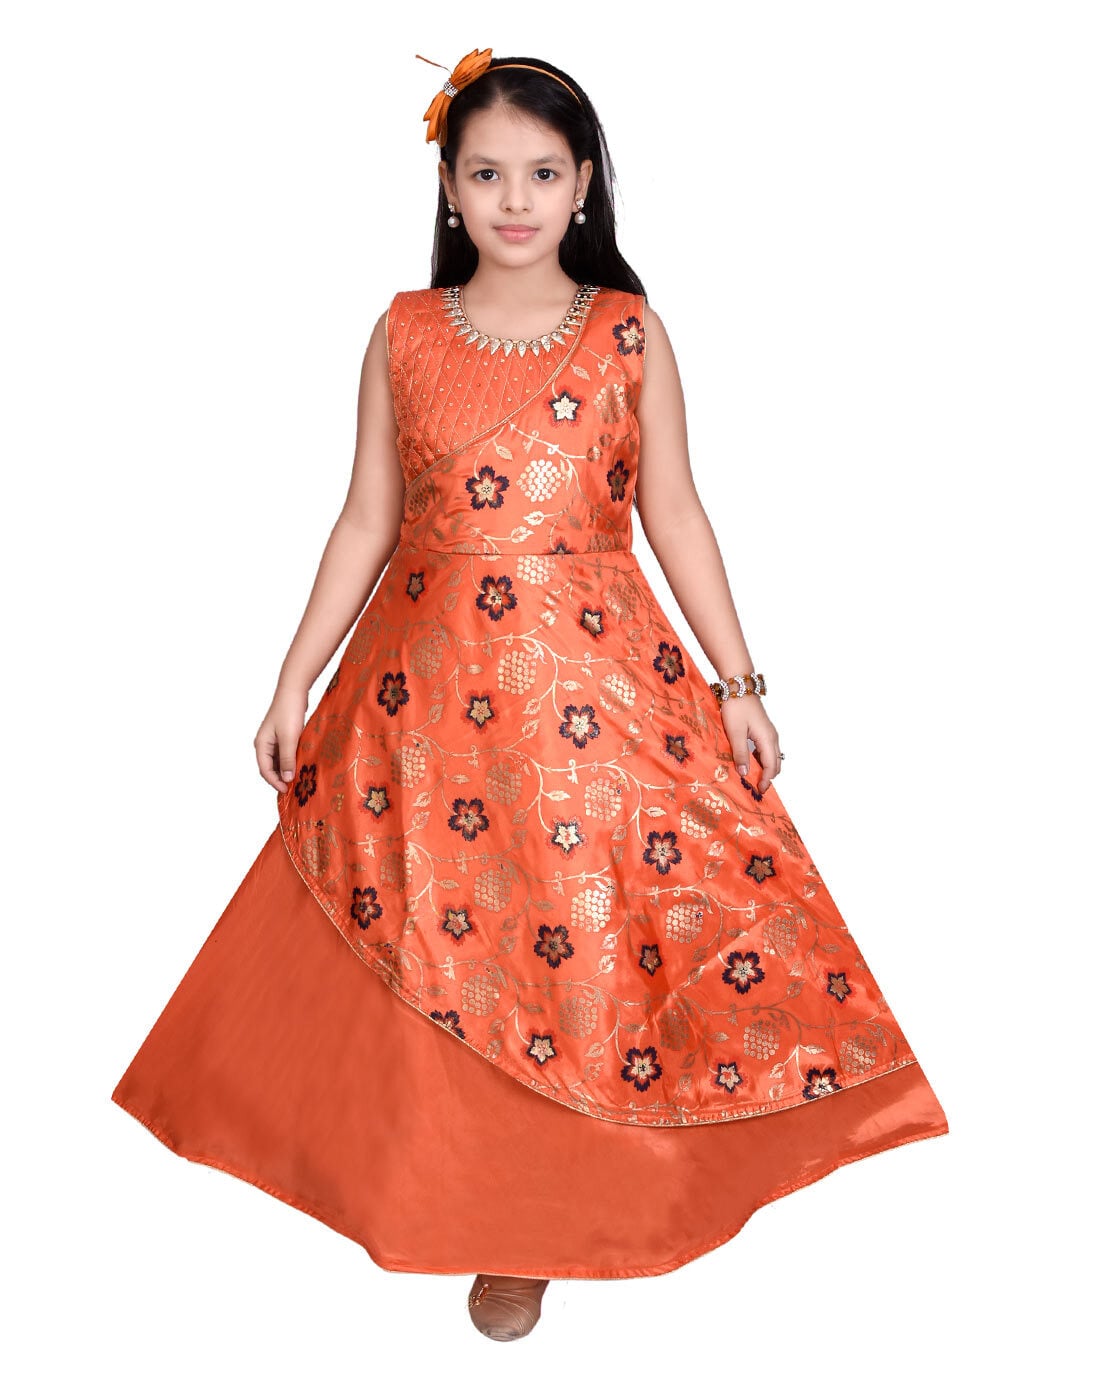 Buy Orange Dresses ☀ Frocks for Girls ...